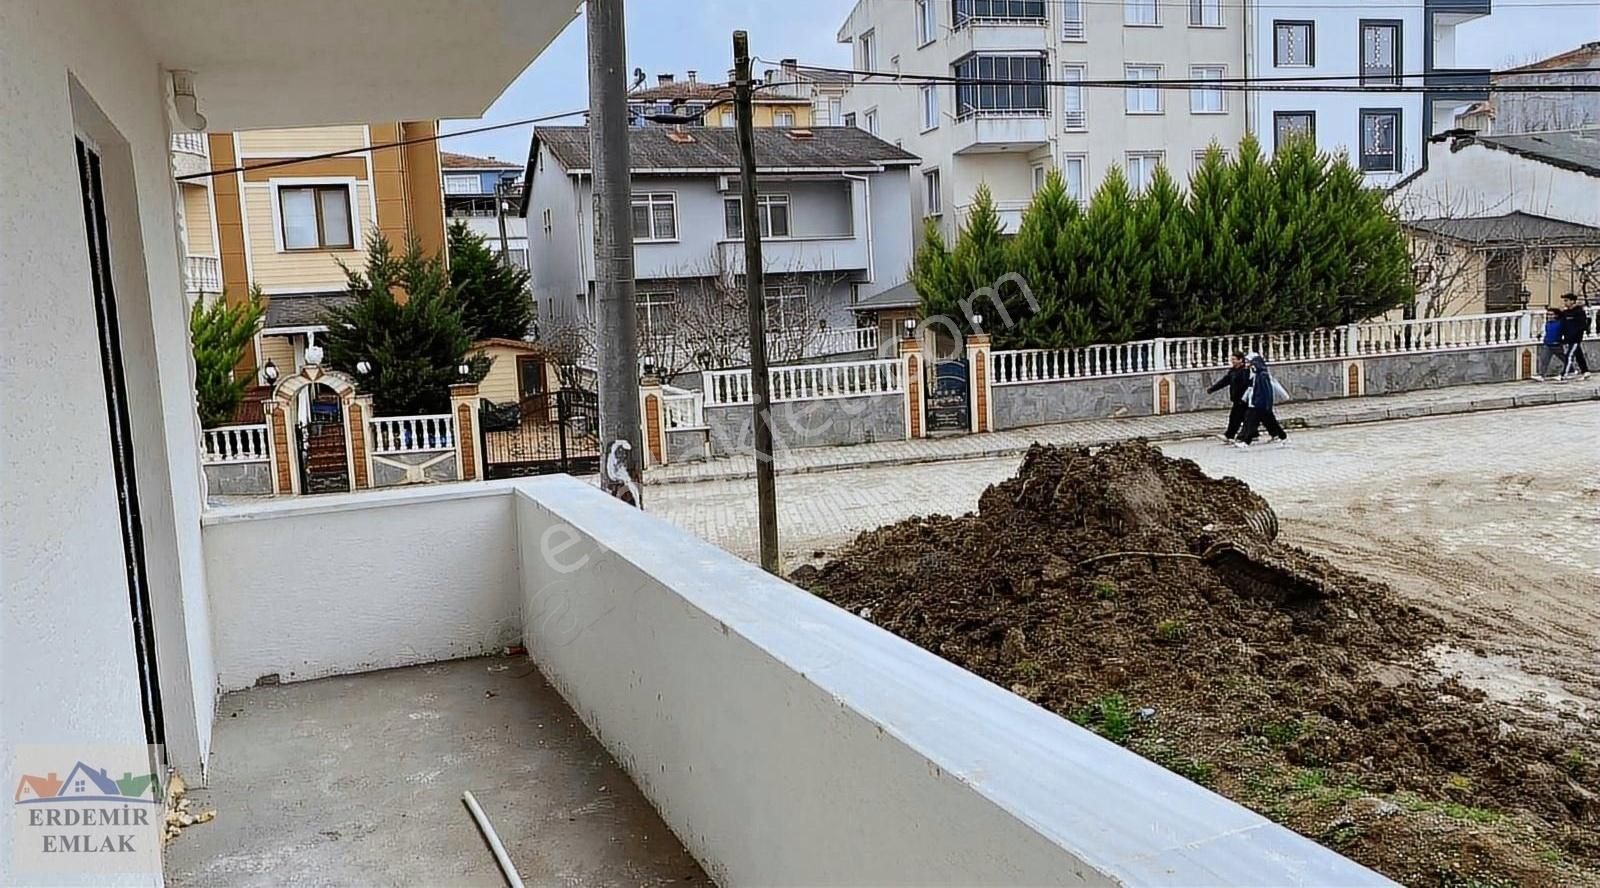 Demirköy İğneada Bld. (Deniz) Satılık Daire ERDEMİR emlaktan merkezi konumda daire